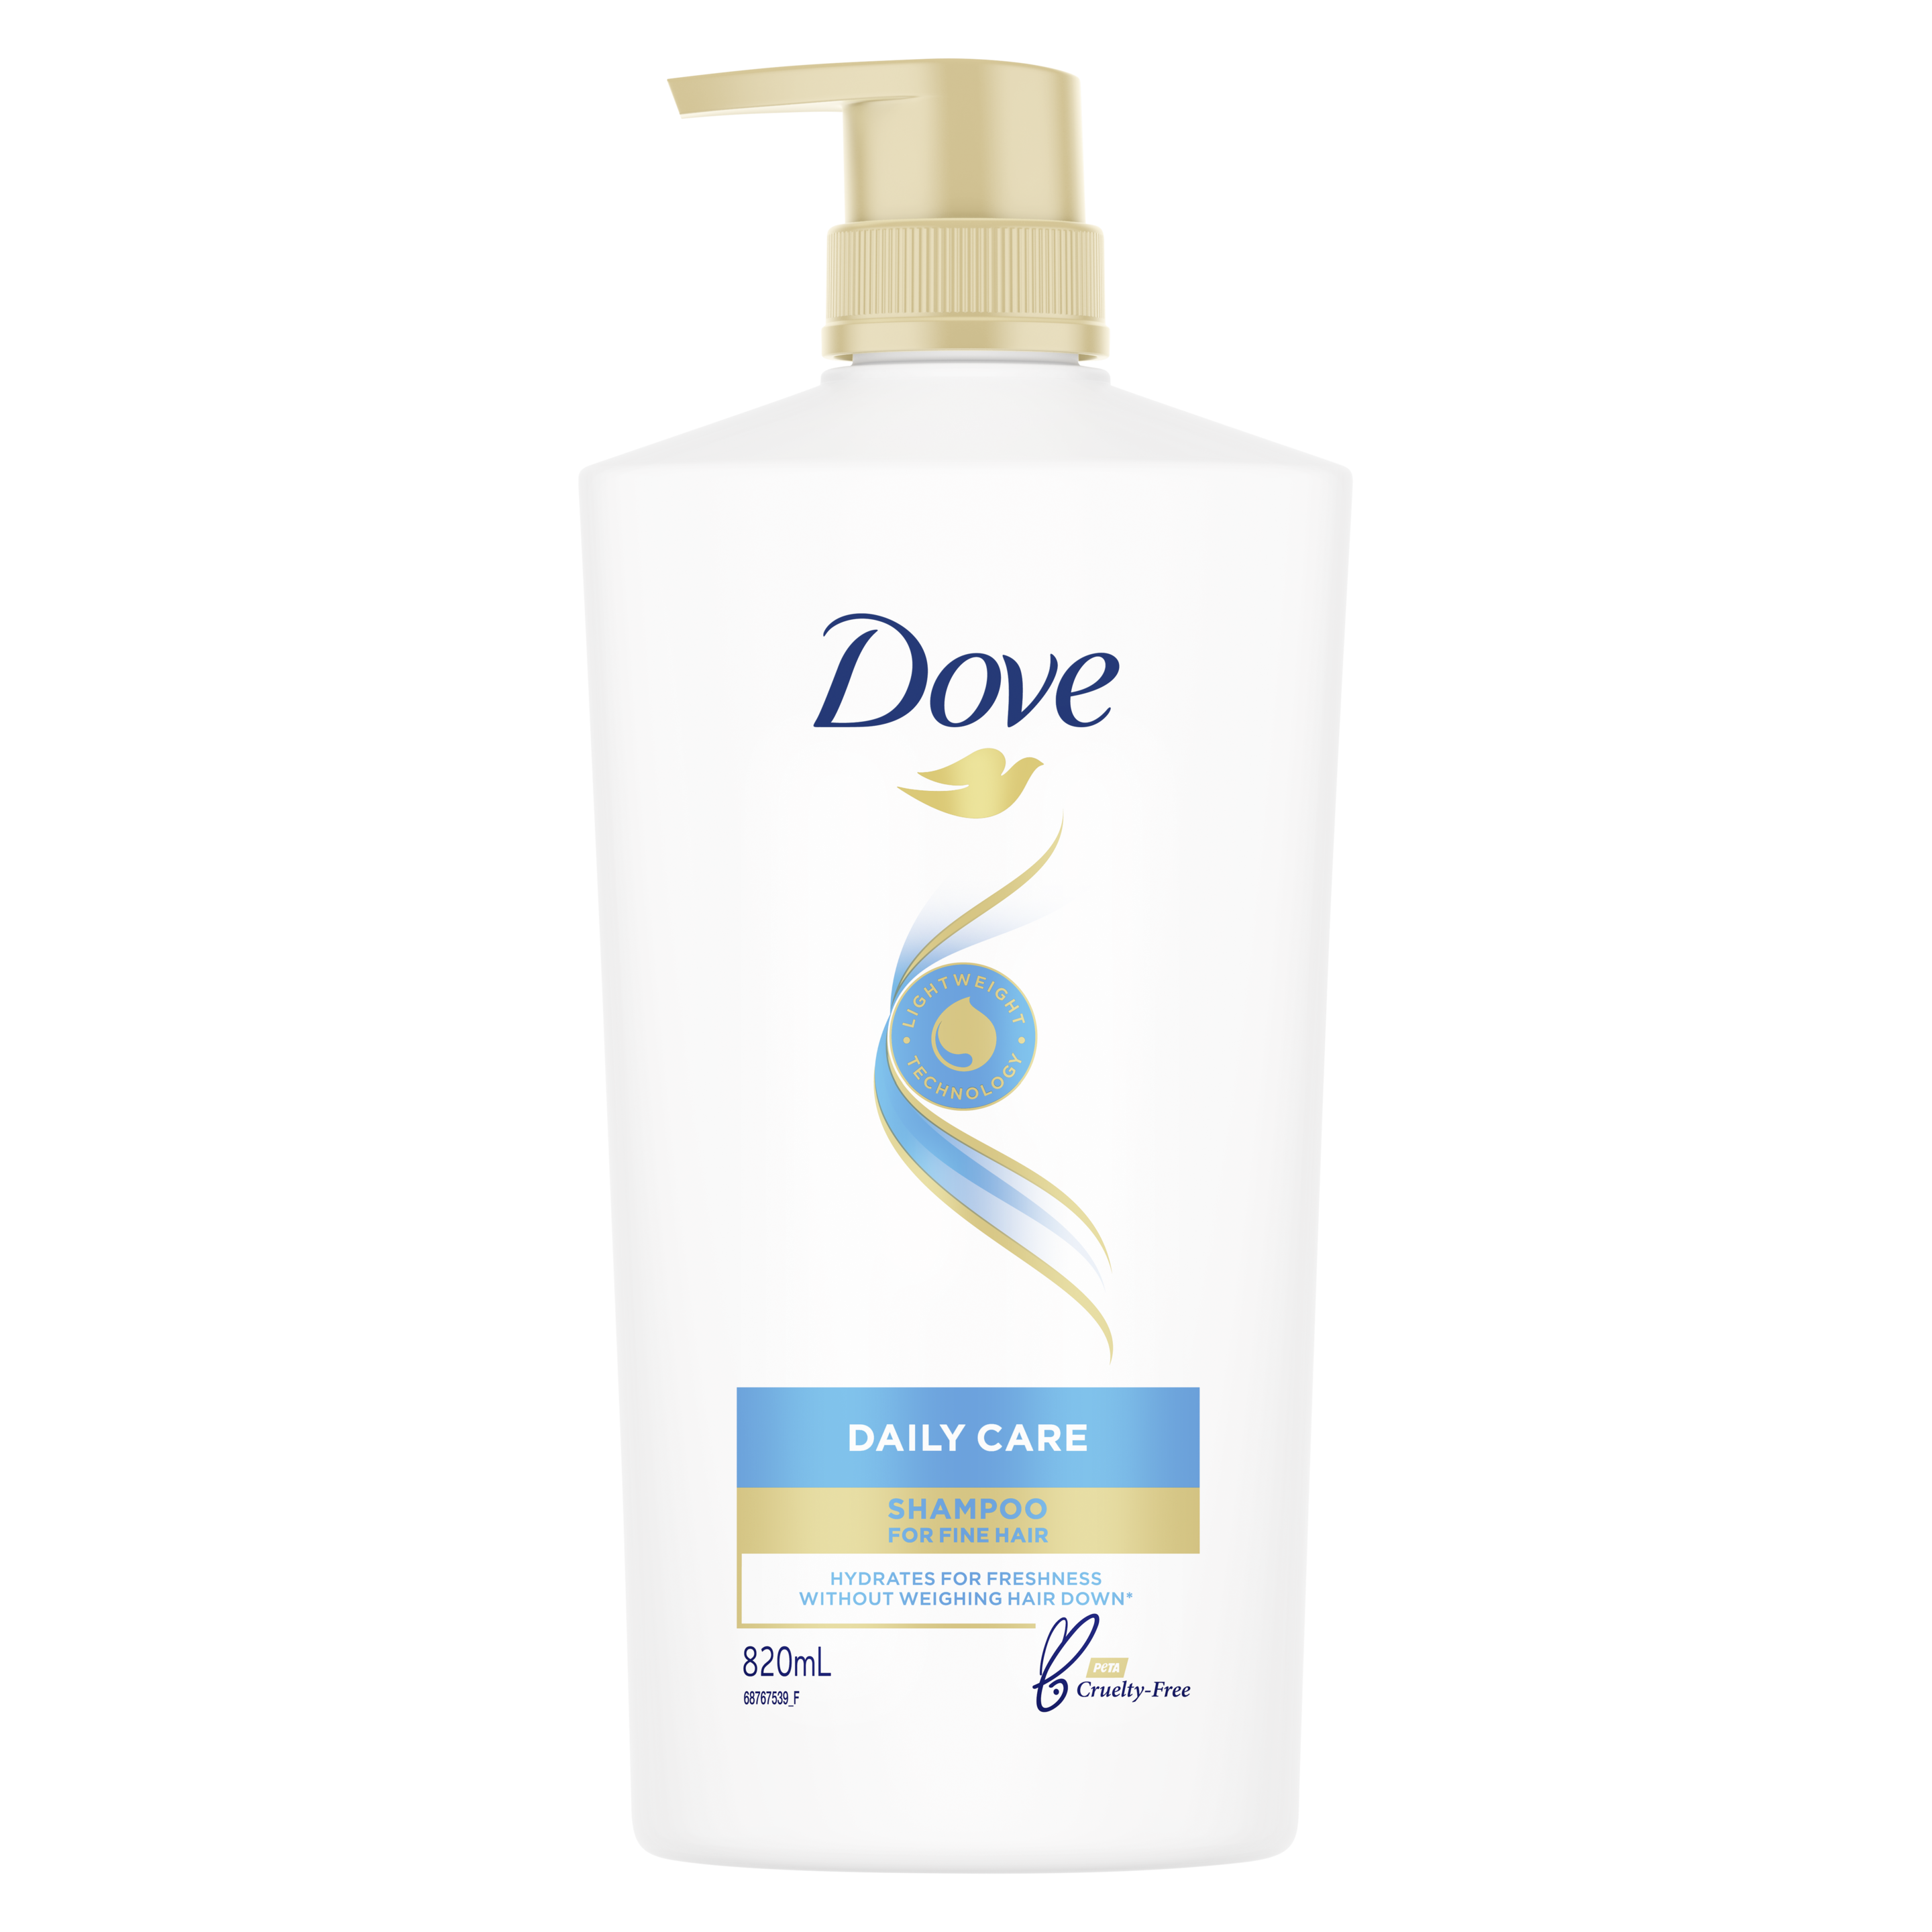 Dove Daily Care Shampoo 820ml Text